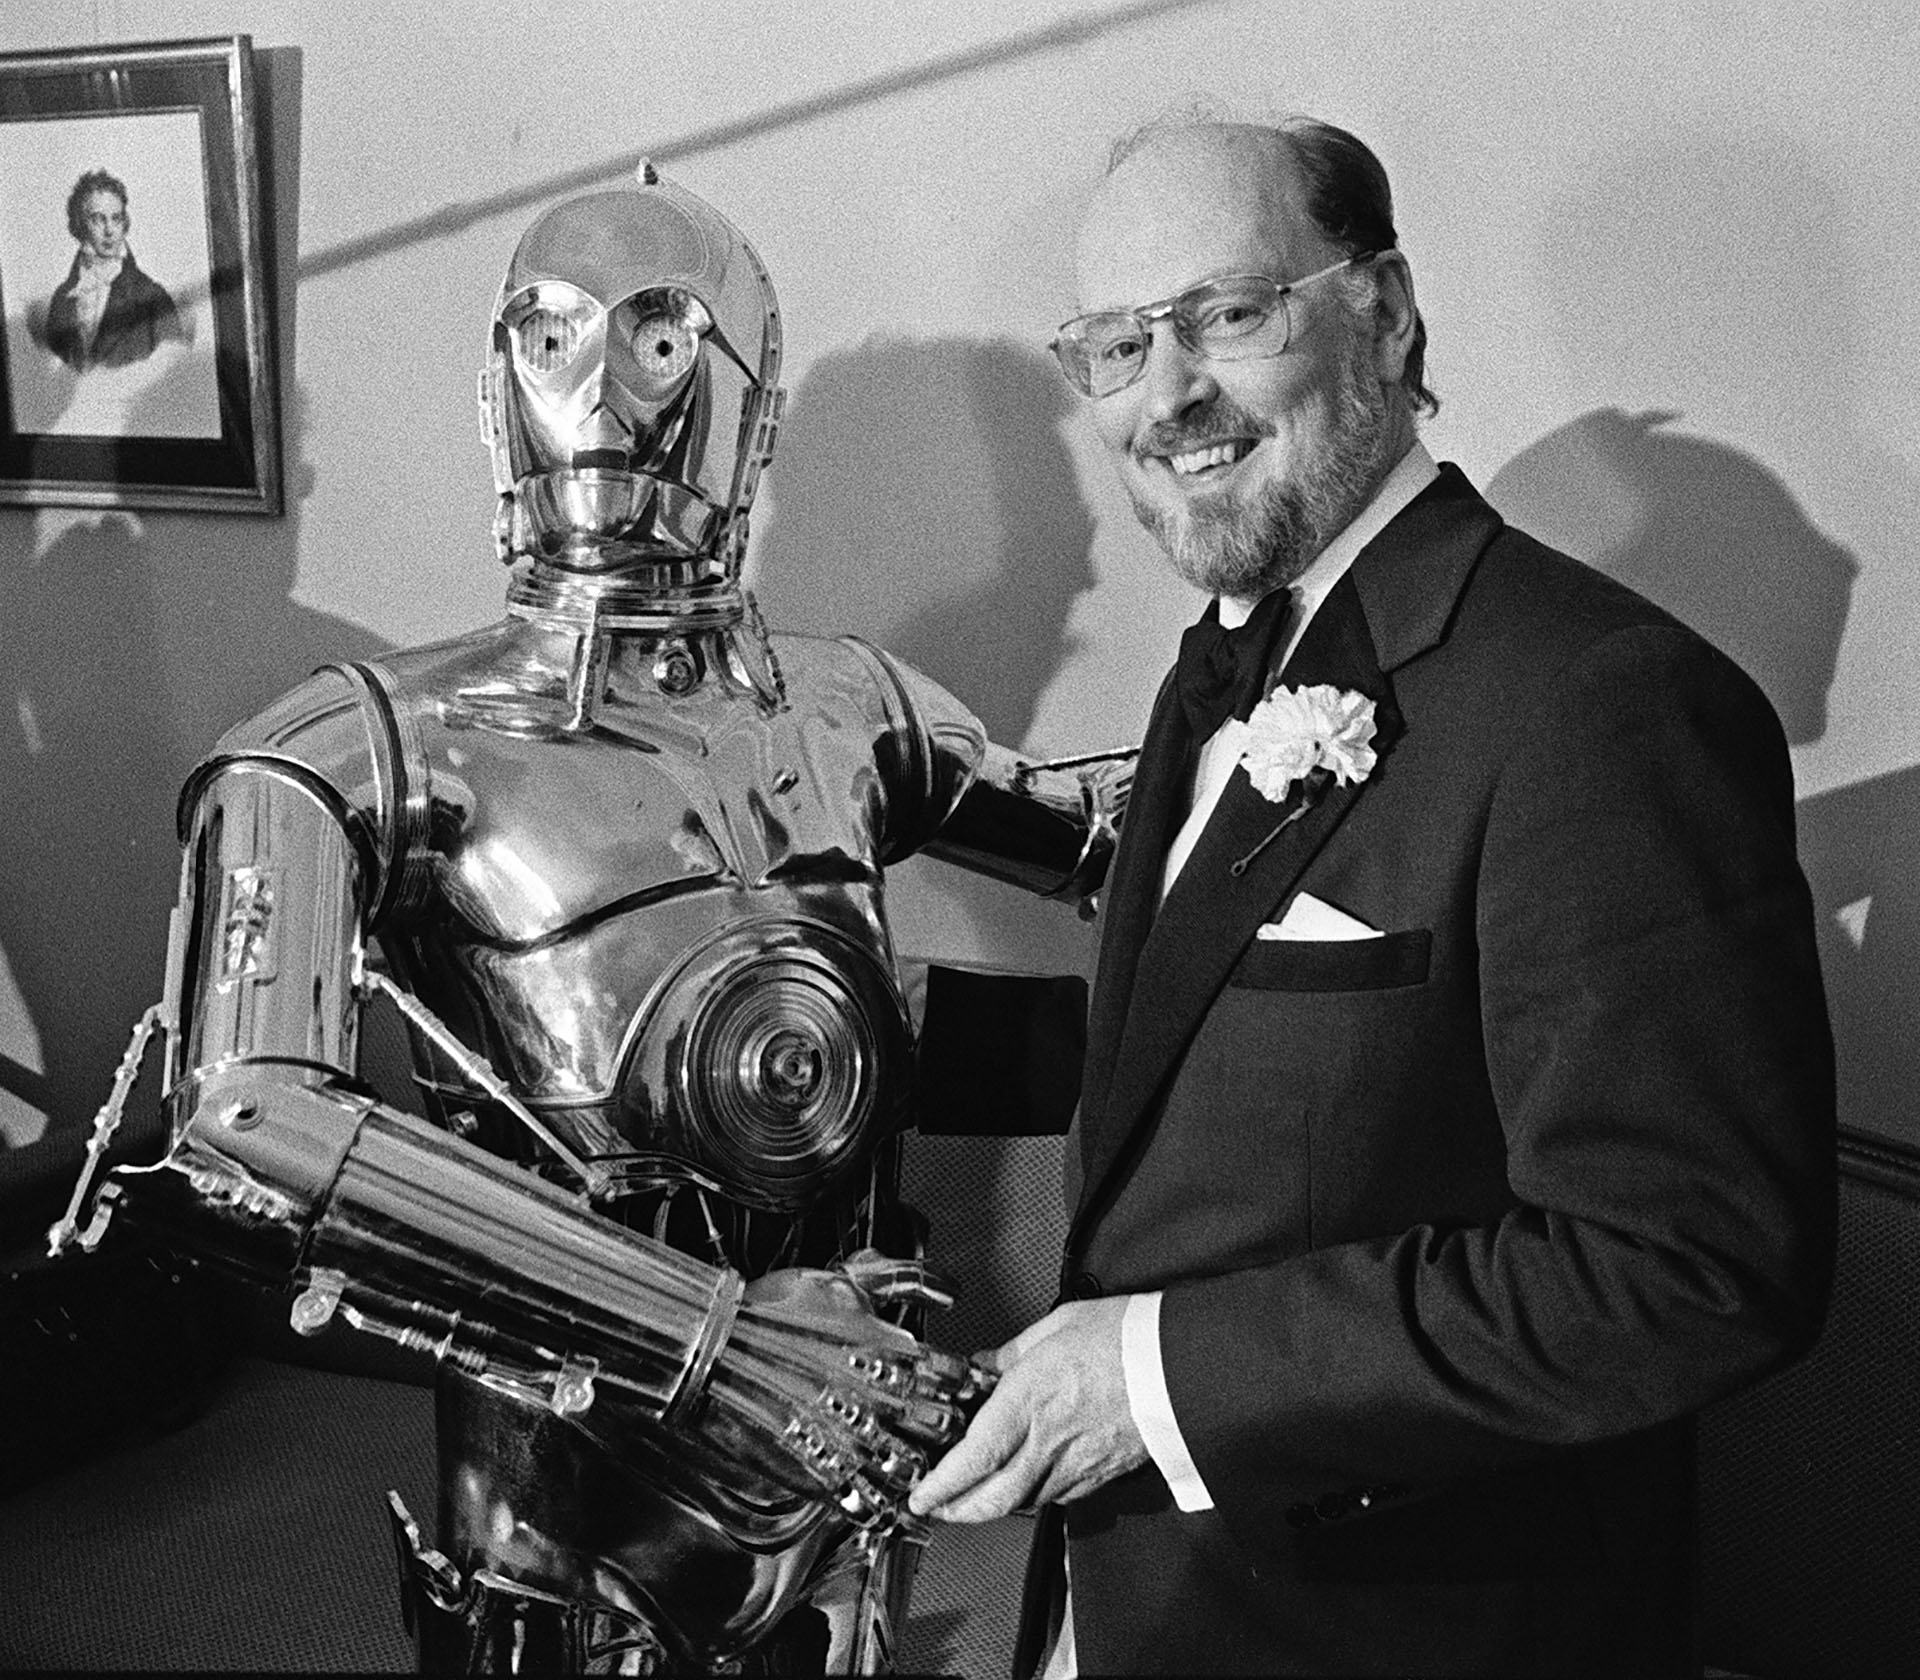 Williams, a la derecha, le da la mano al personaje C-3PO de "Star Wars" en una conferencia de prensa en Boston el 30 de abril de 1980. (Foto AP, archivo)